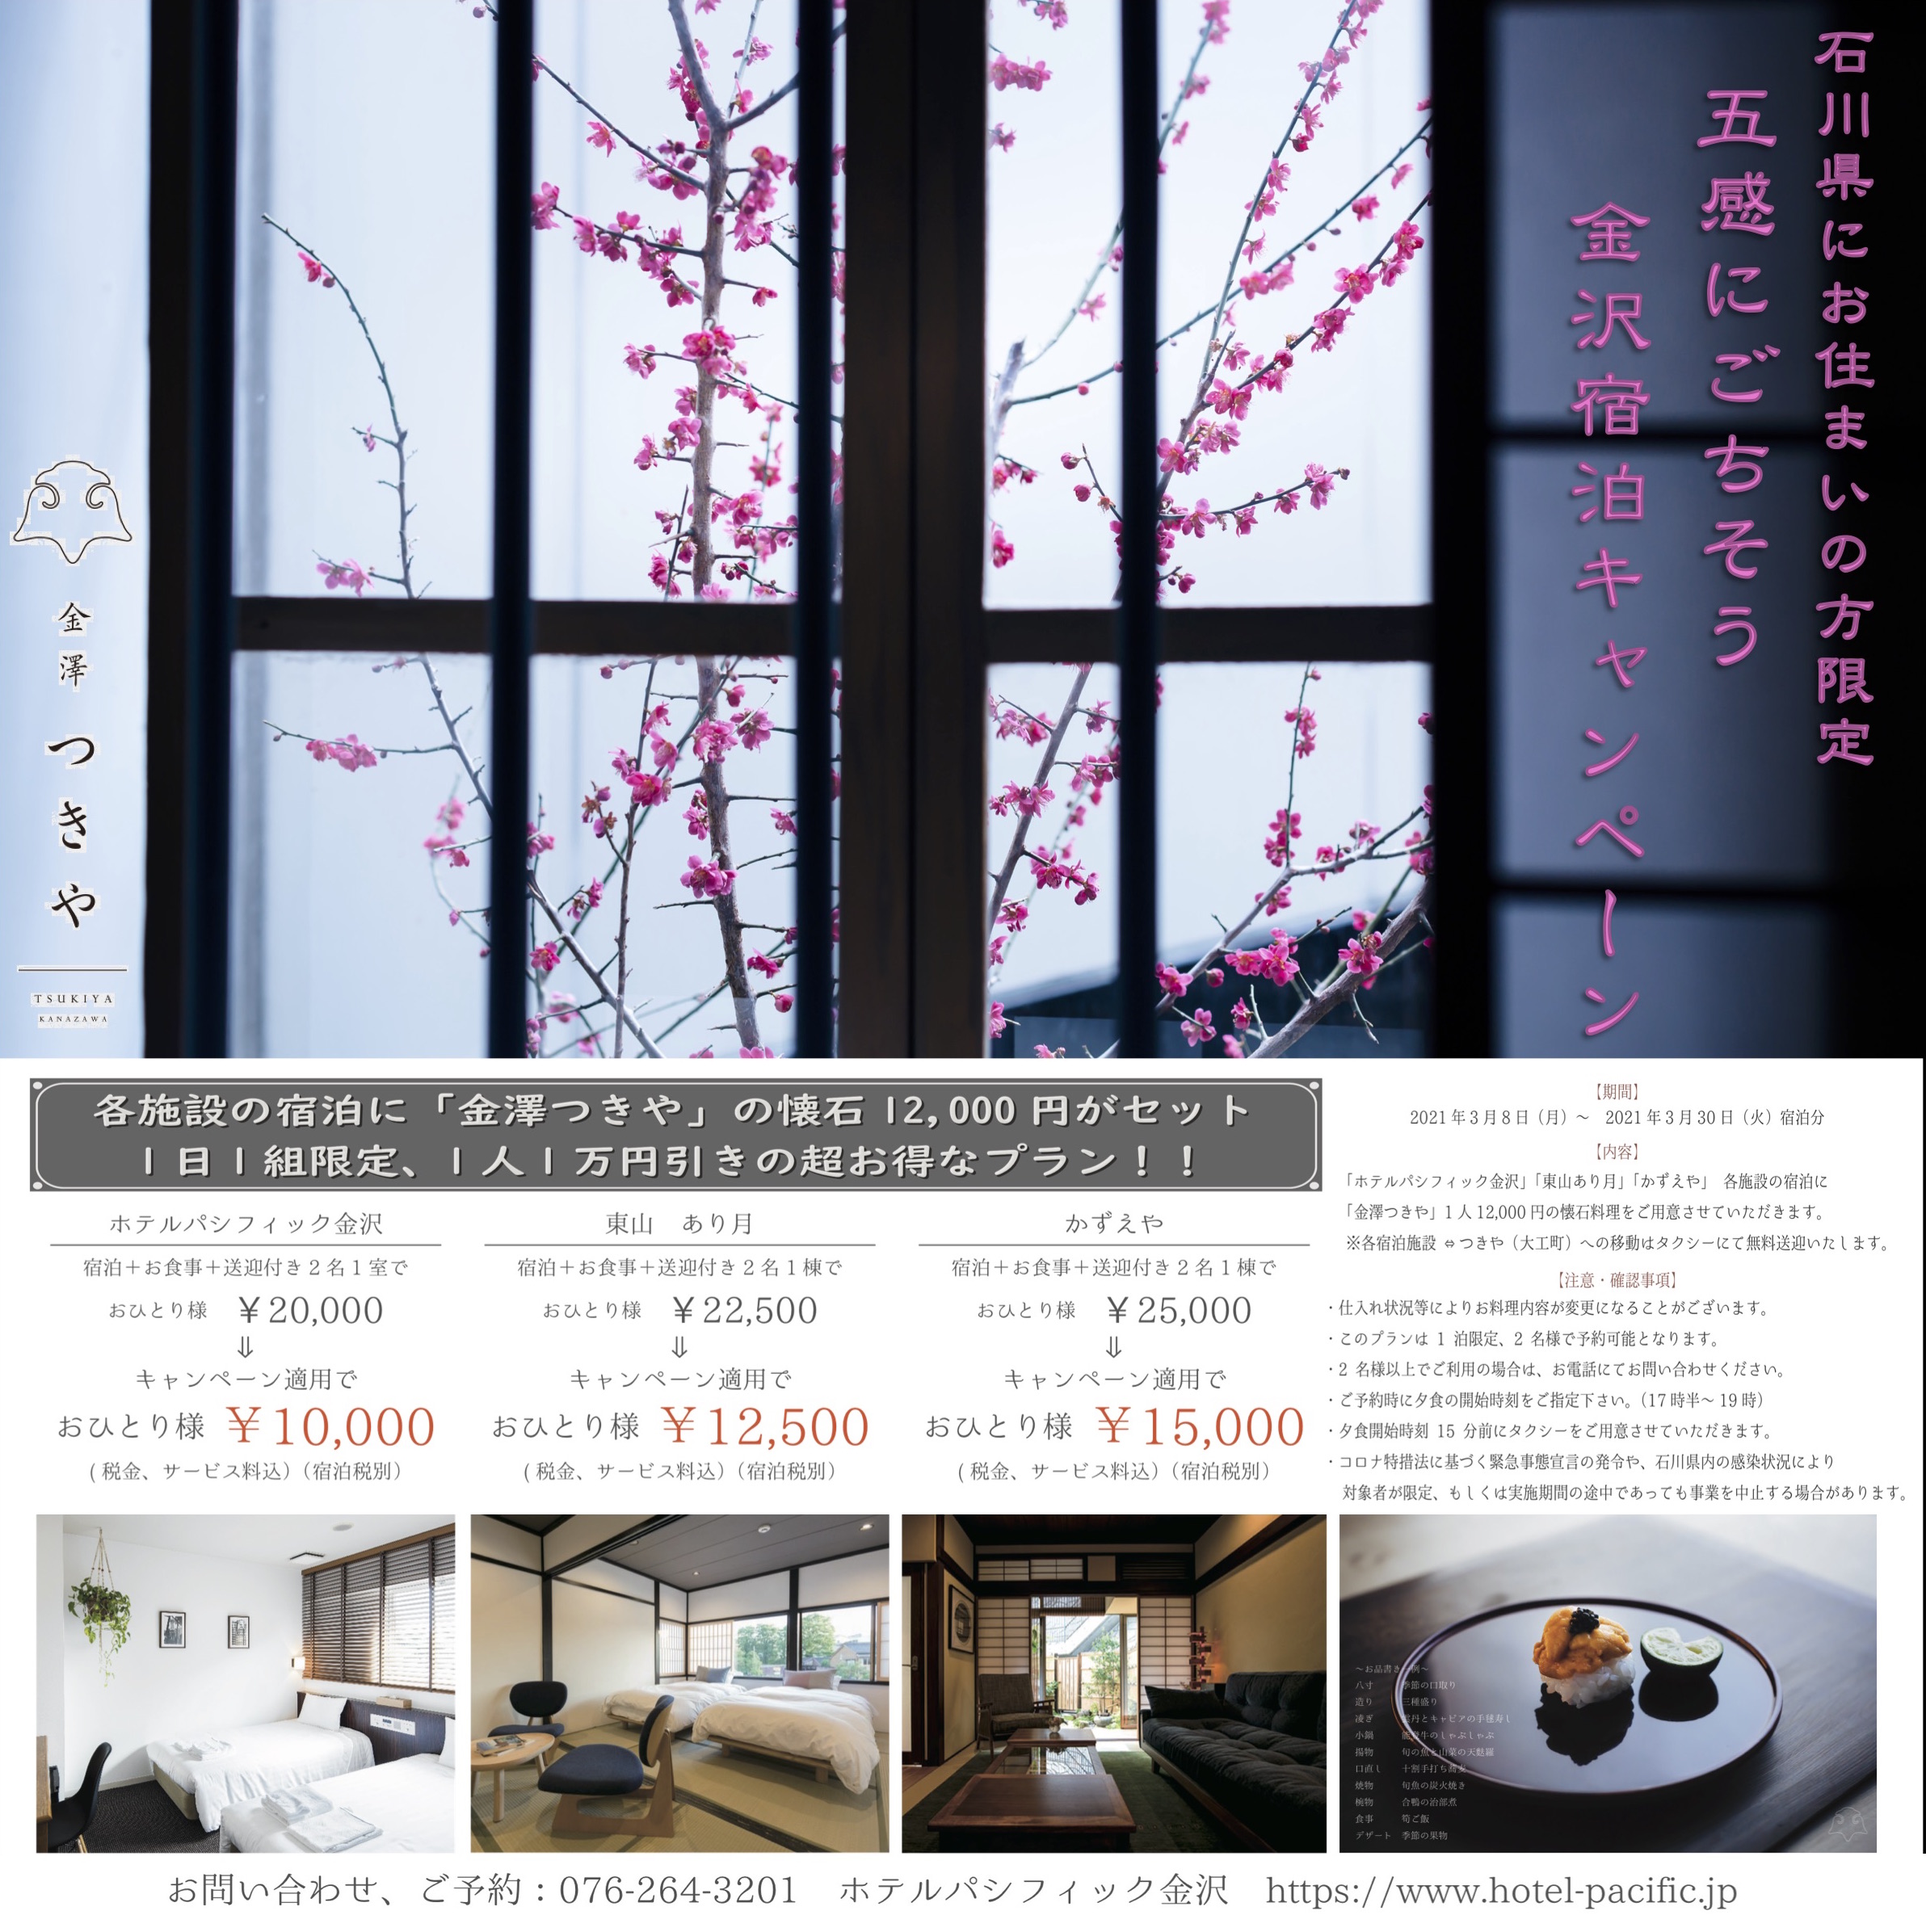 石川県にお住まいの方へご案内 五感にごちそう金沢宿泊キャンペーン 3月